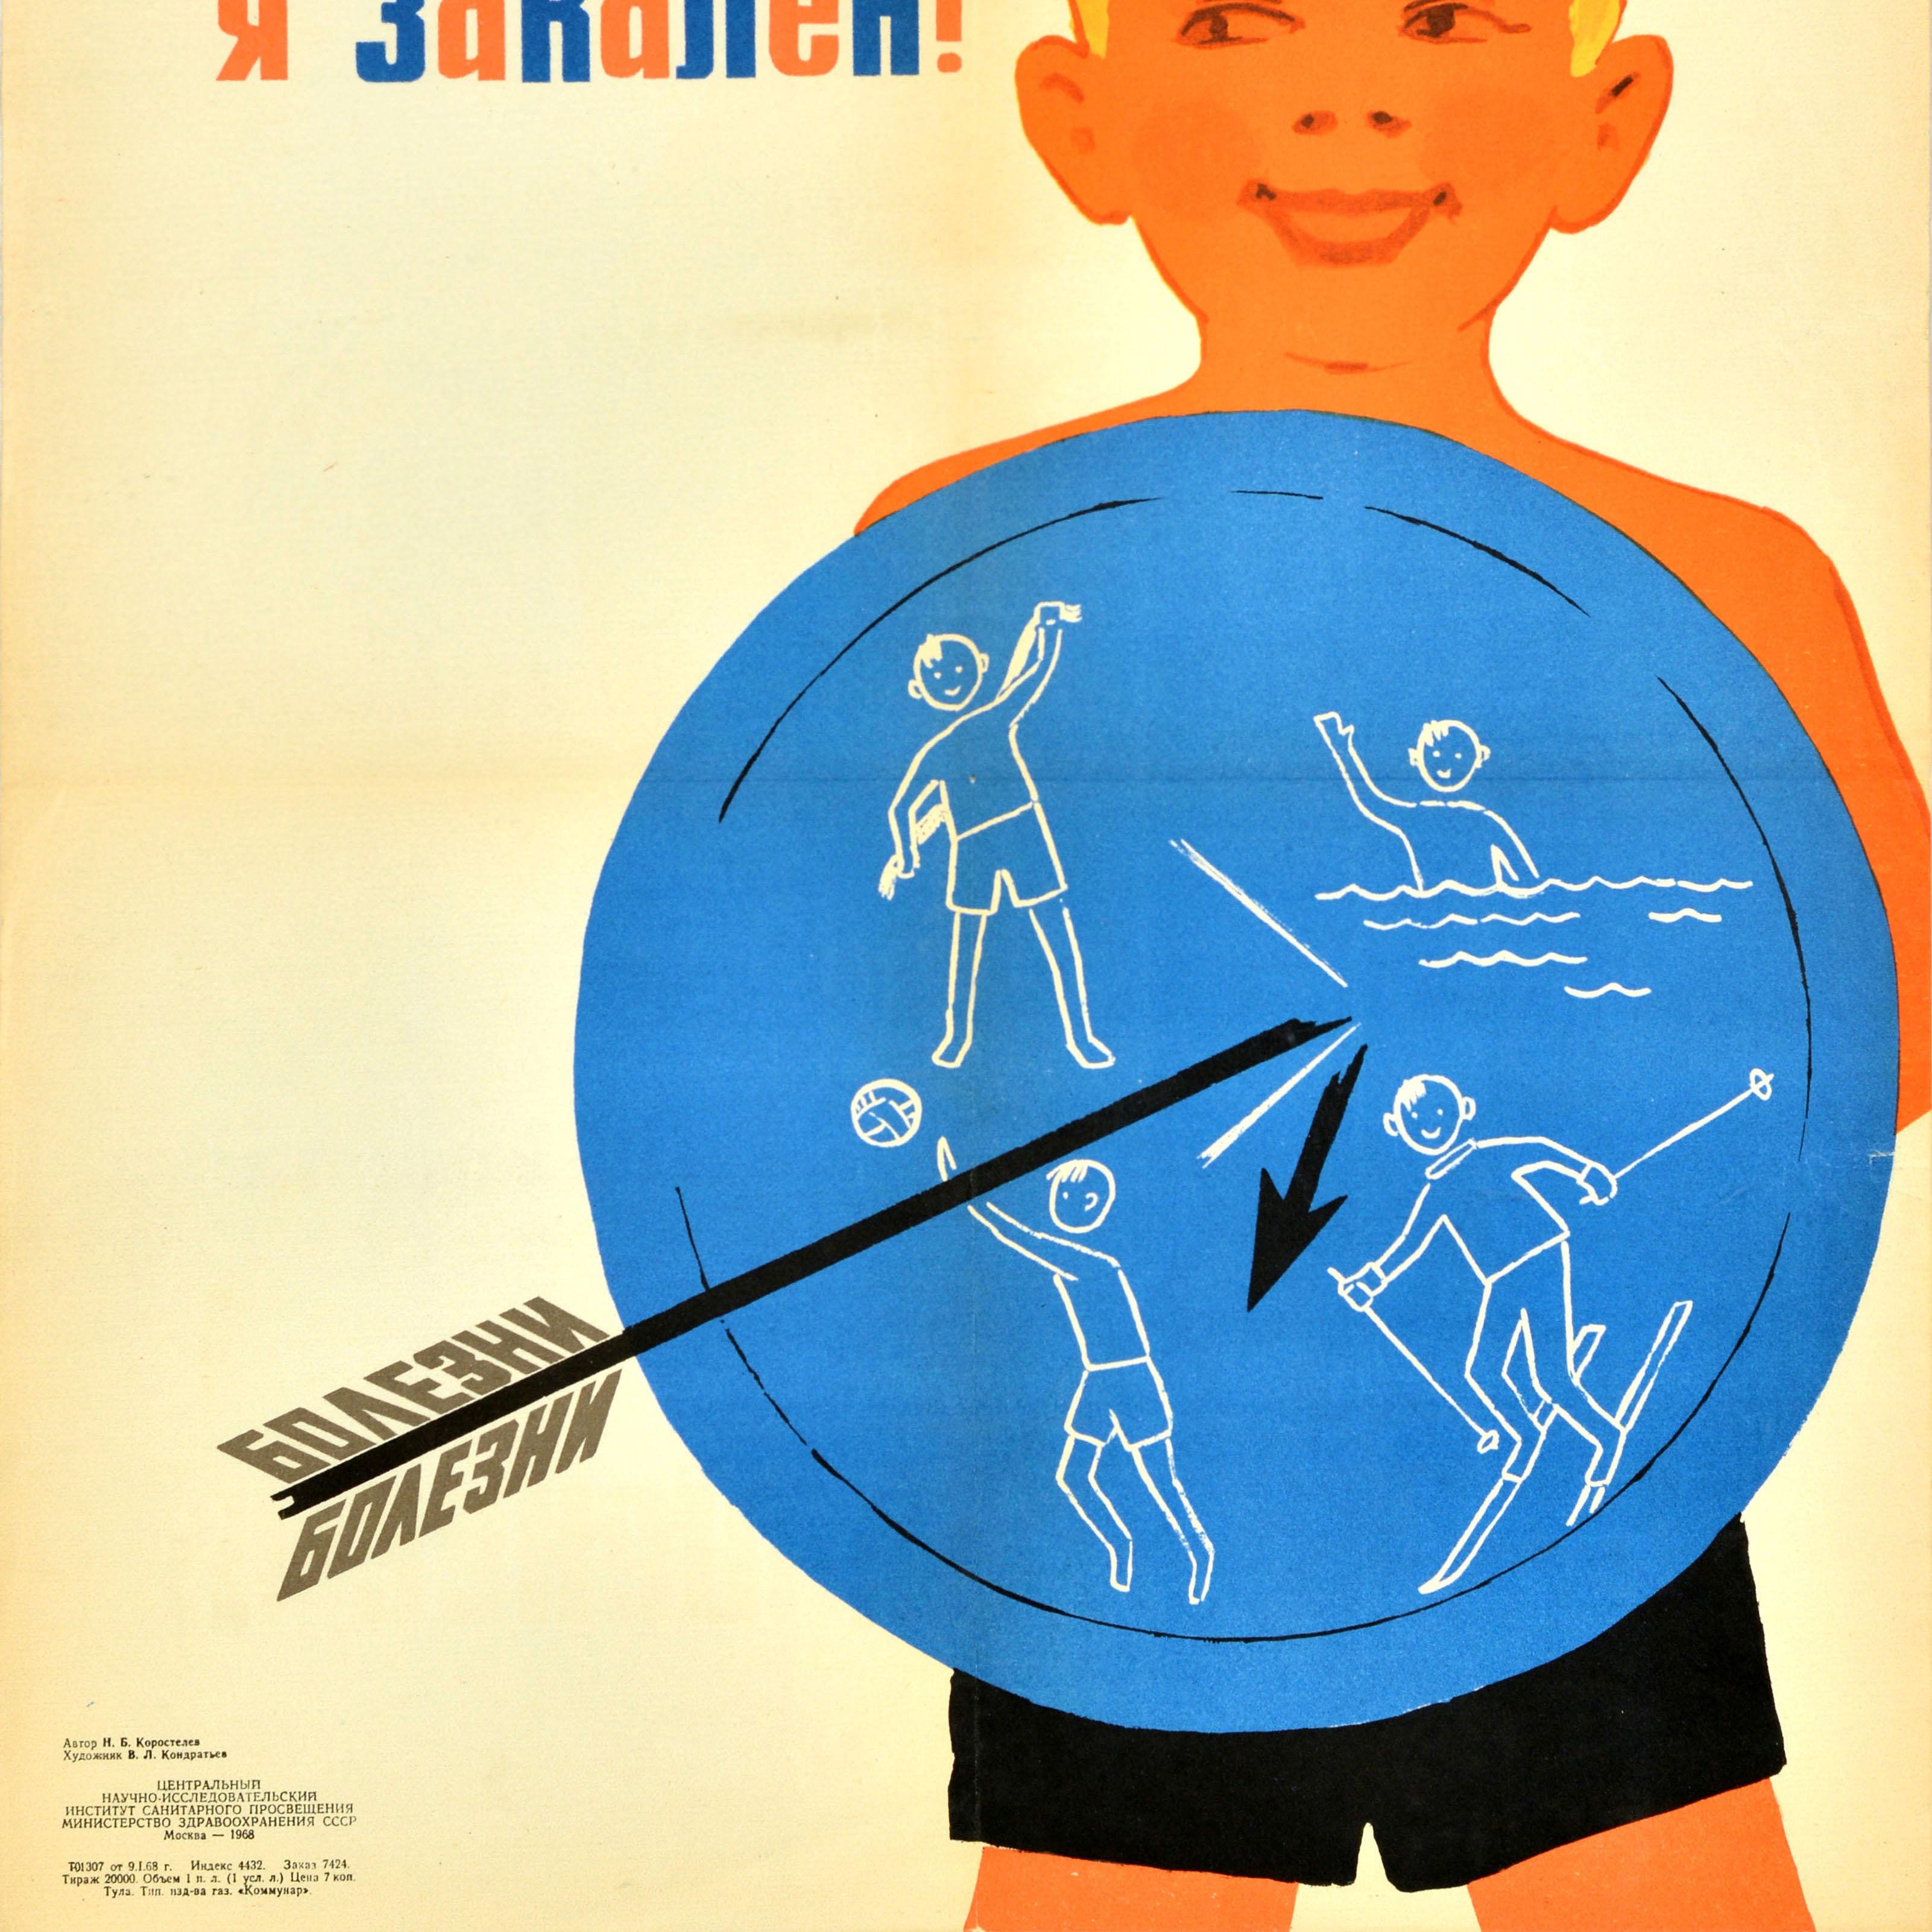 Original Vintage Gesundheitspropaganda Plakat - Ich bin kalt trainiert - mit einer Illustration eines lächelnden Jungen hält ein Schild mit Sport Abbildungen von Schwimmen und spielen ein Ballspiel, Skifahren und Trocknen selbst auf sie mit einem